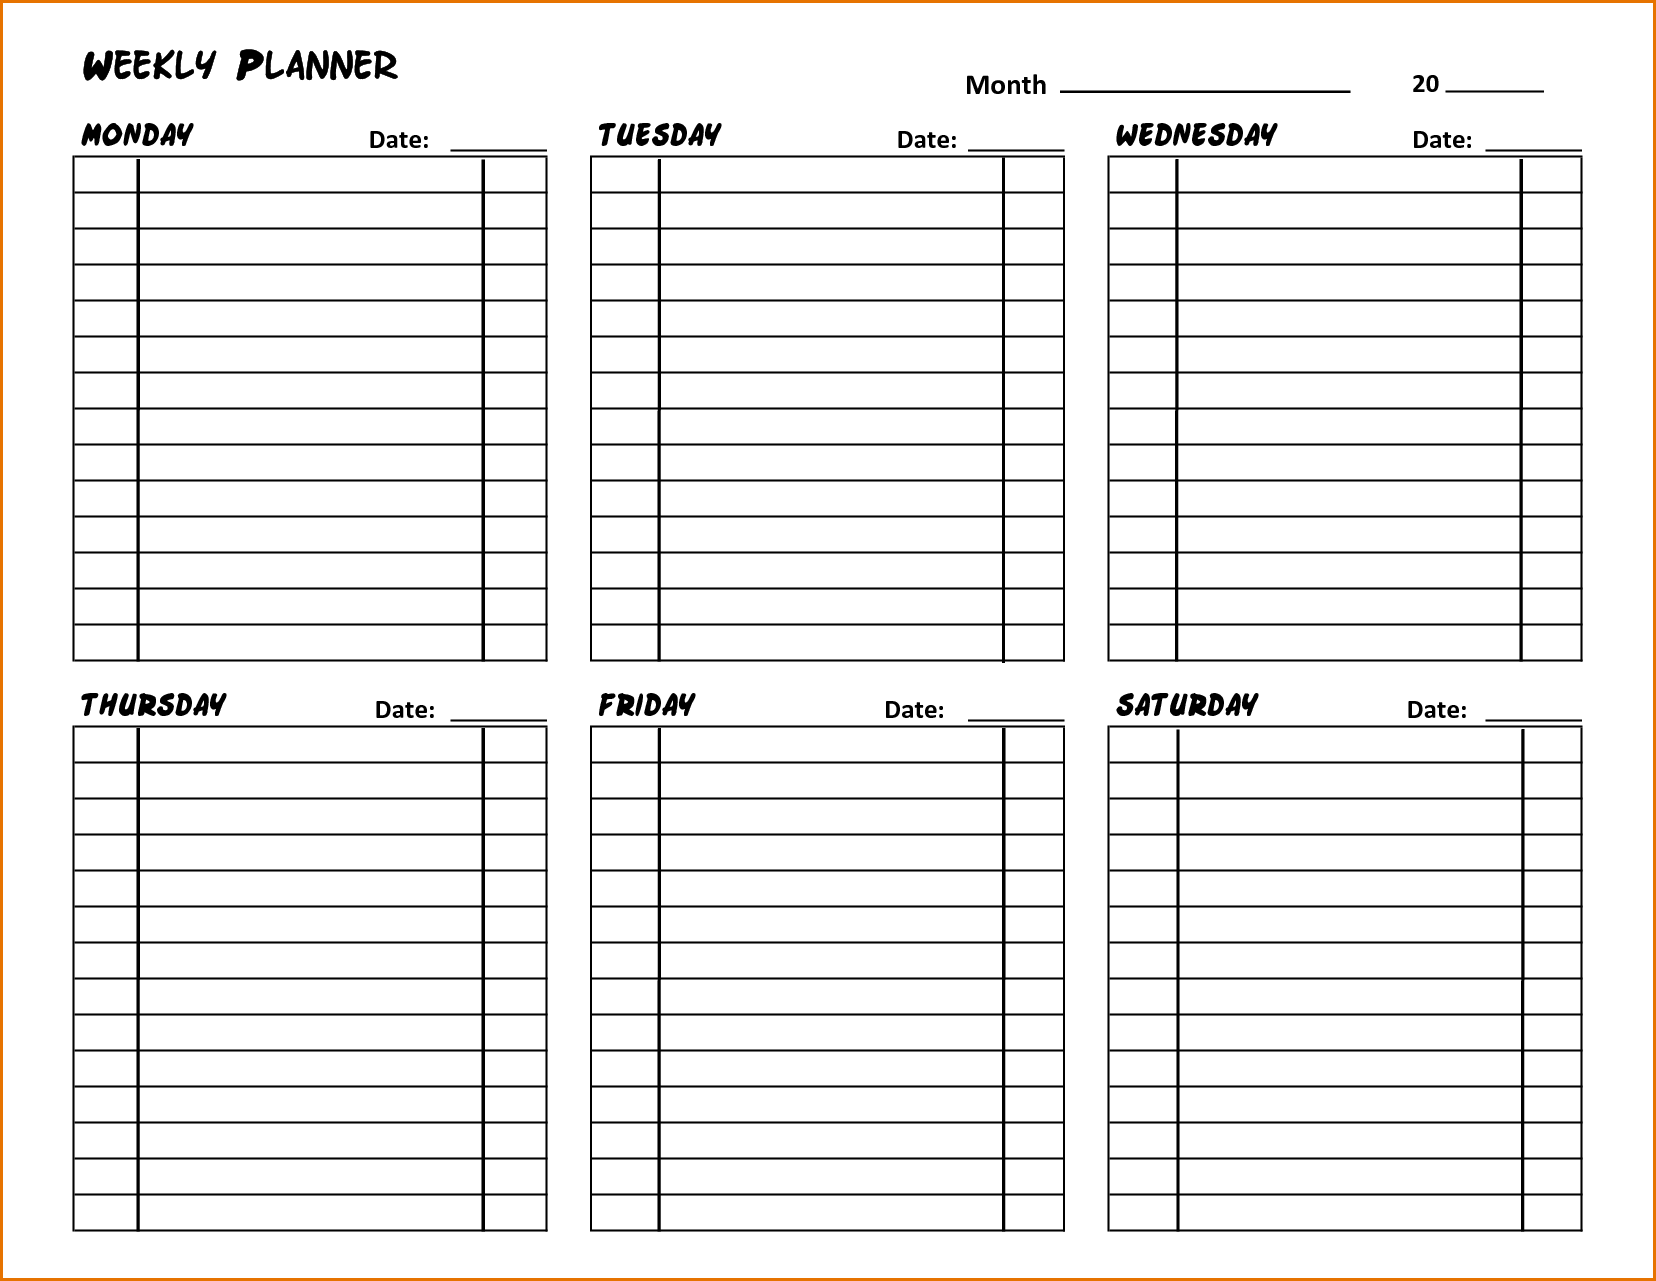 Weekly Planner шаблон для печати